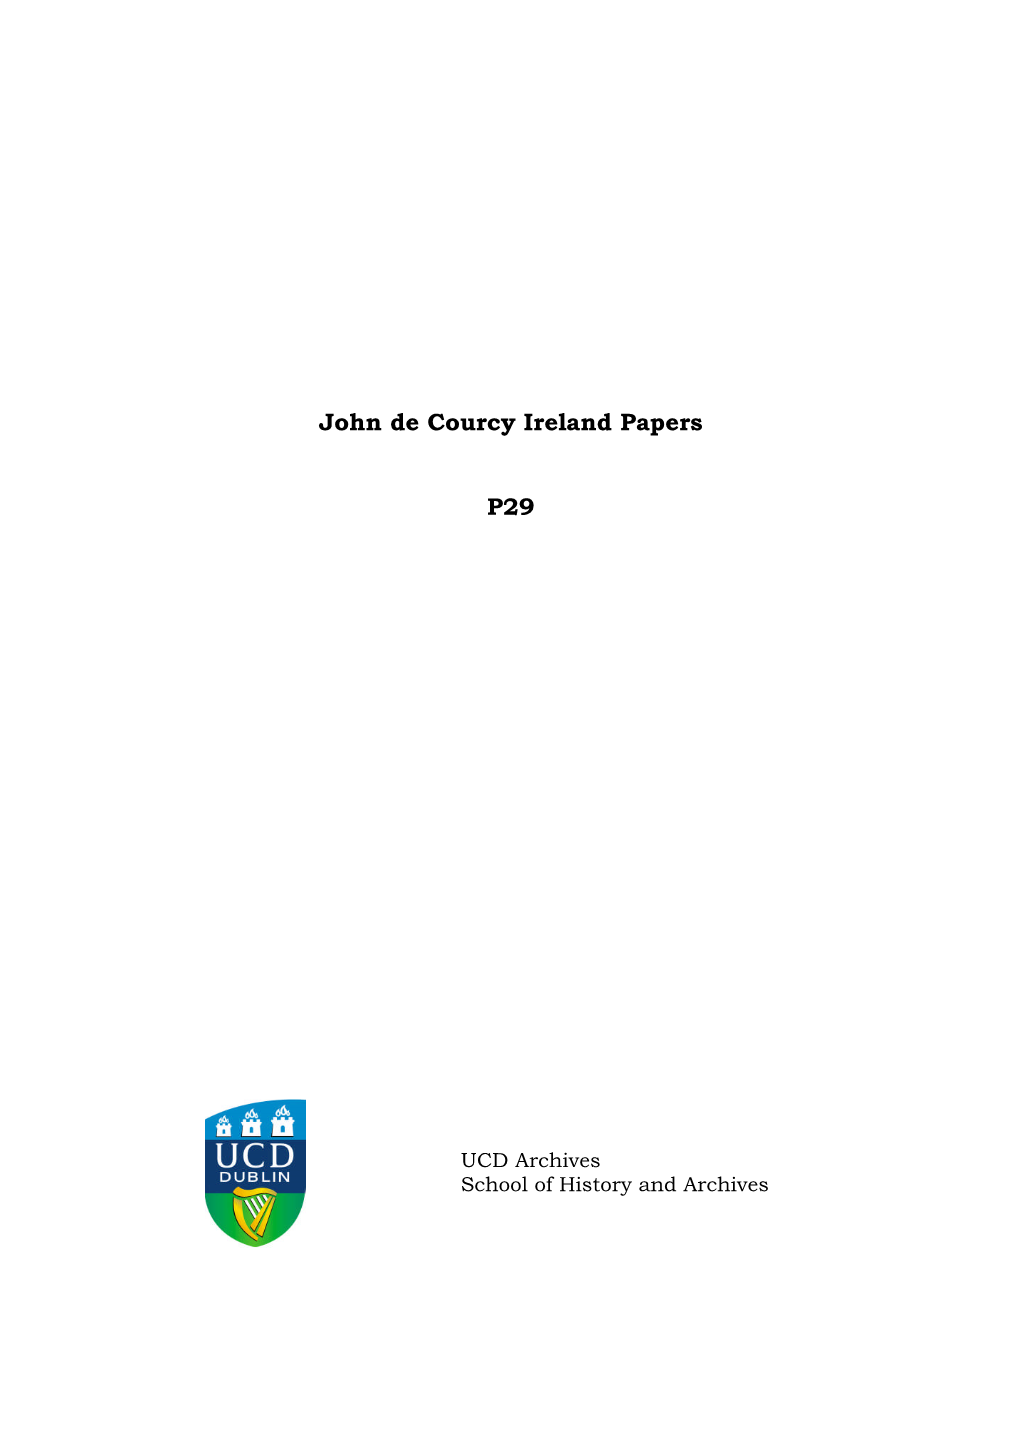 P29 John De Courcy Ireland Papers